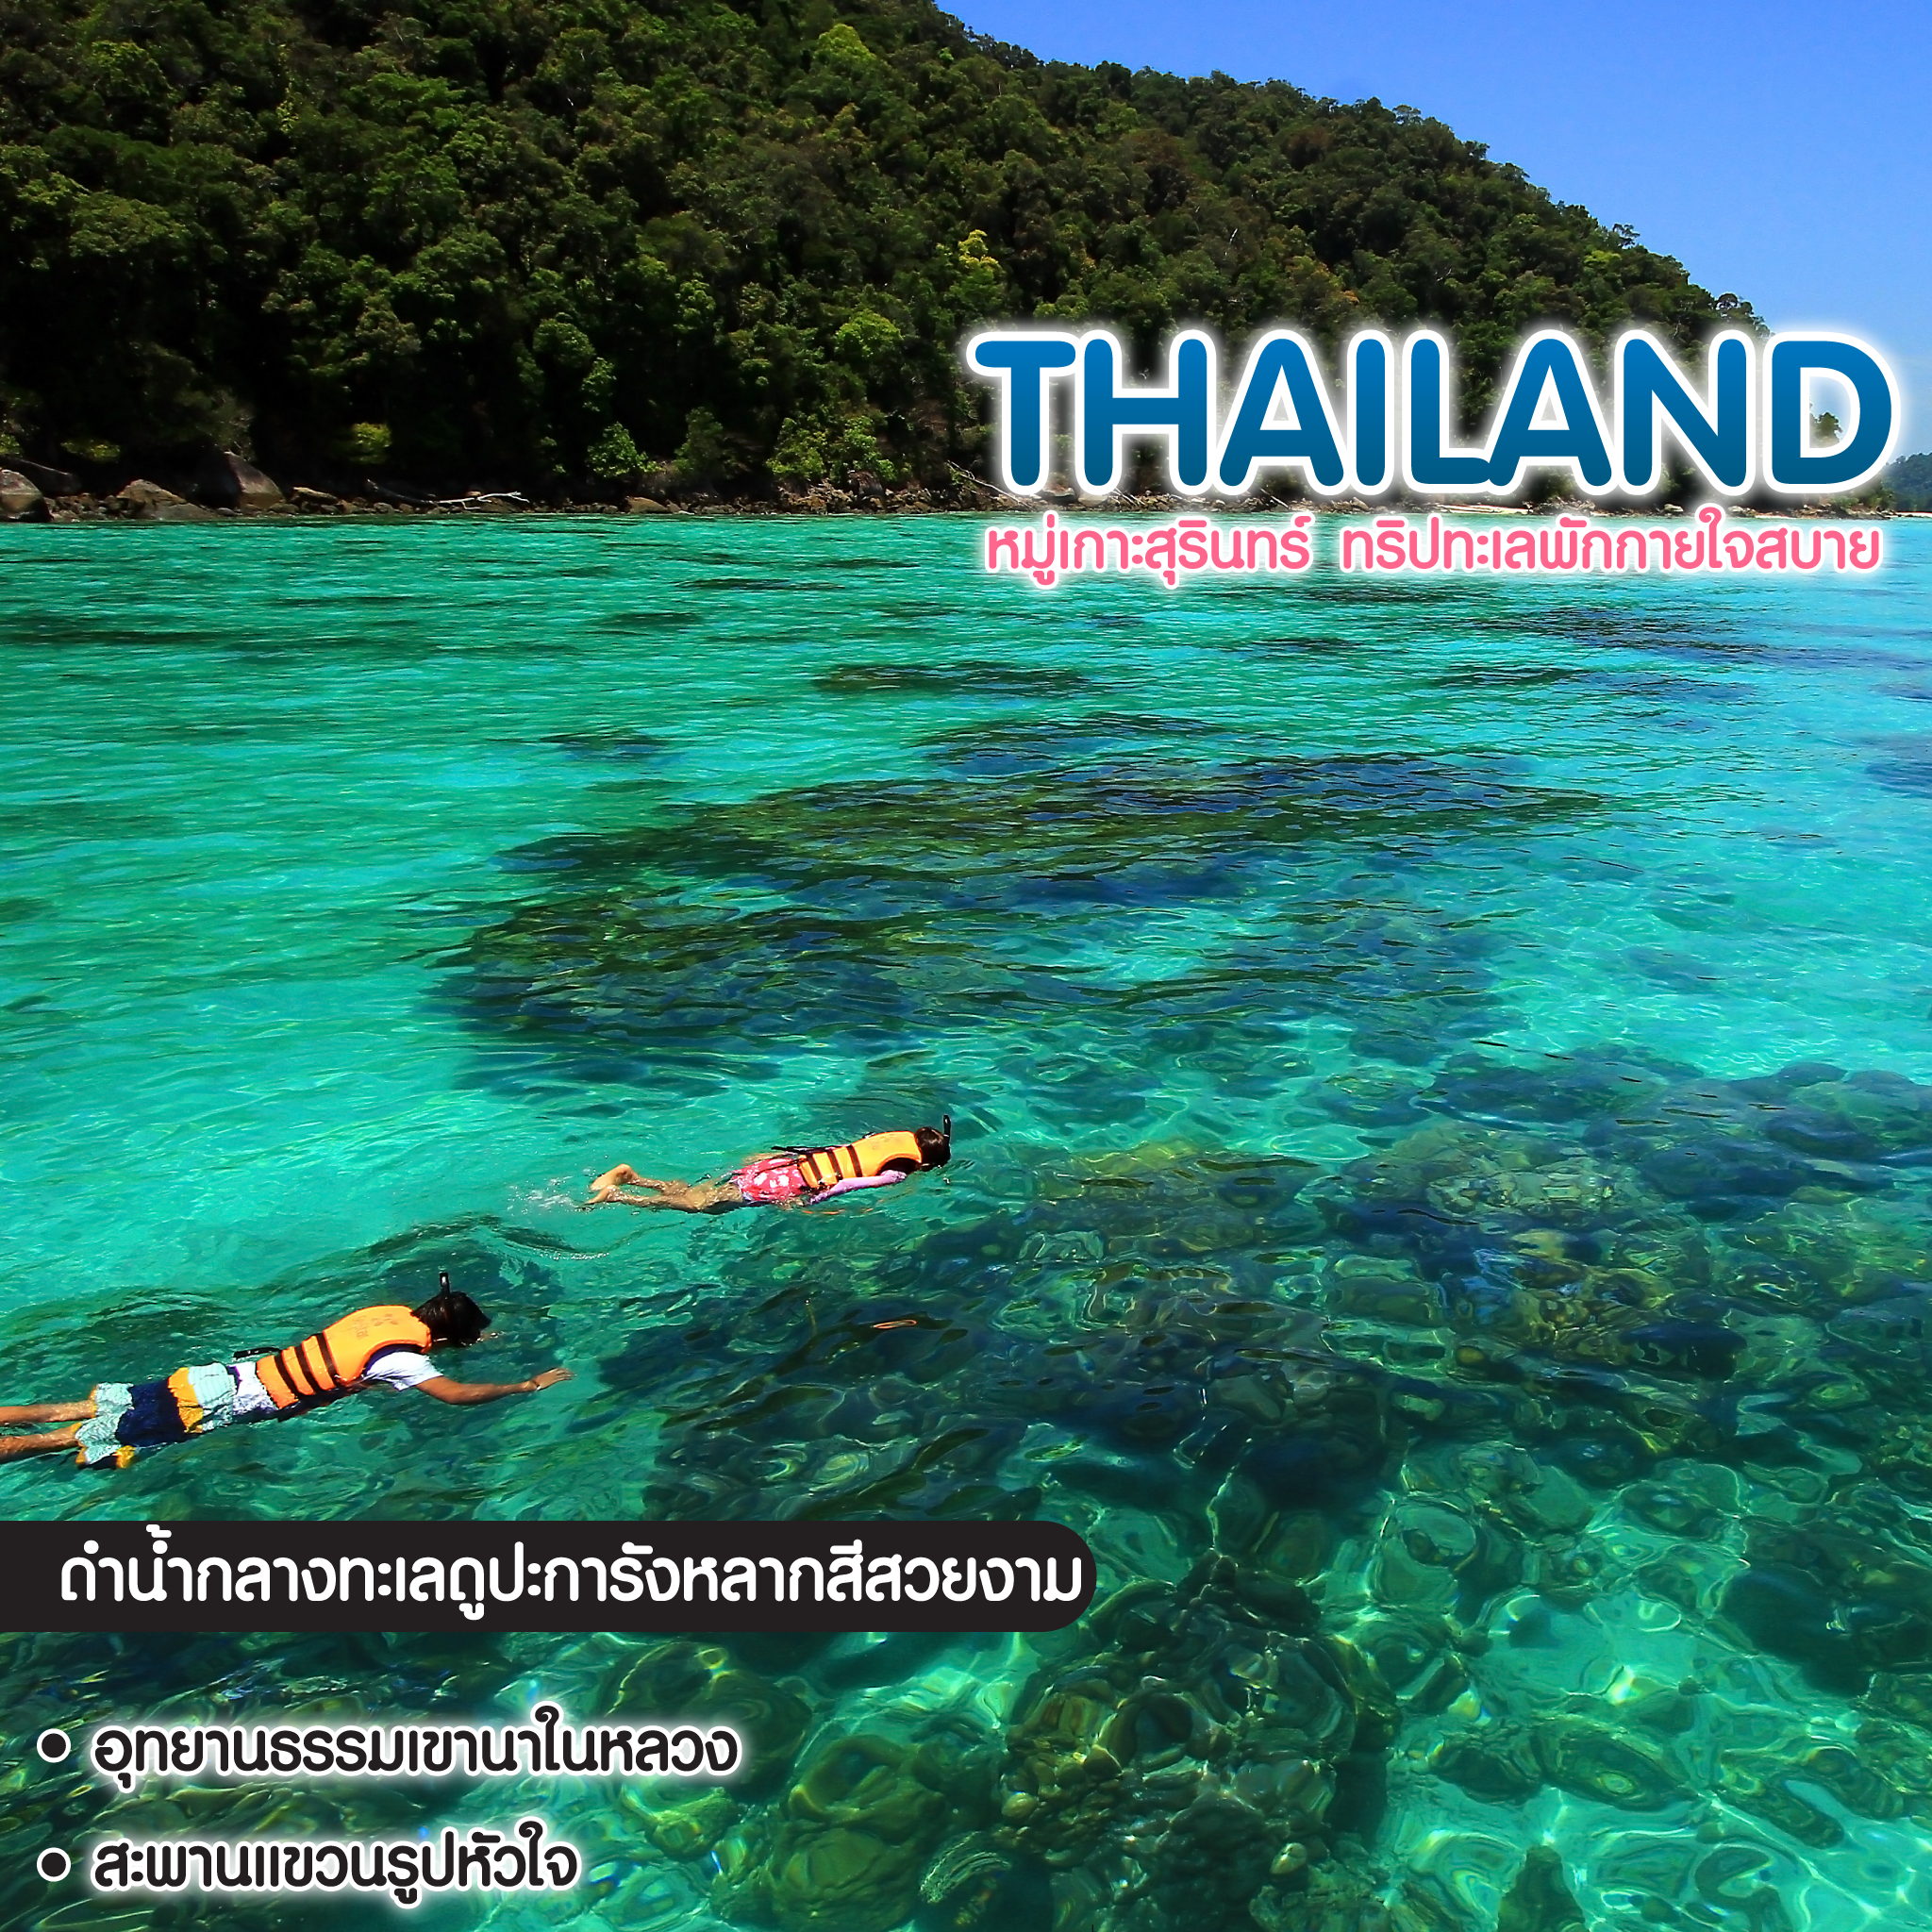 ทัวร์ไทย หมู่เกาะสุรินทร์ ทริปทะเลพักกายใจสบาย